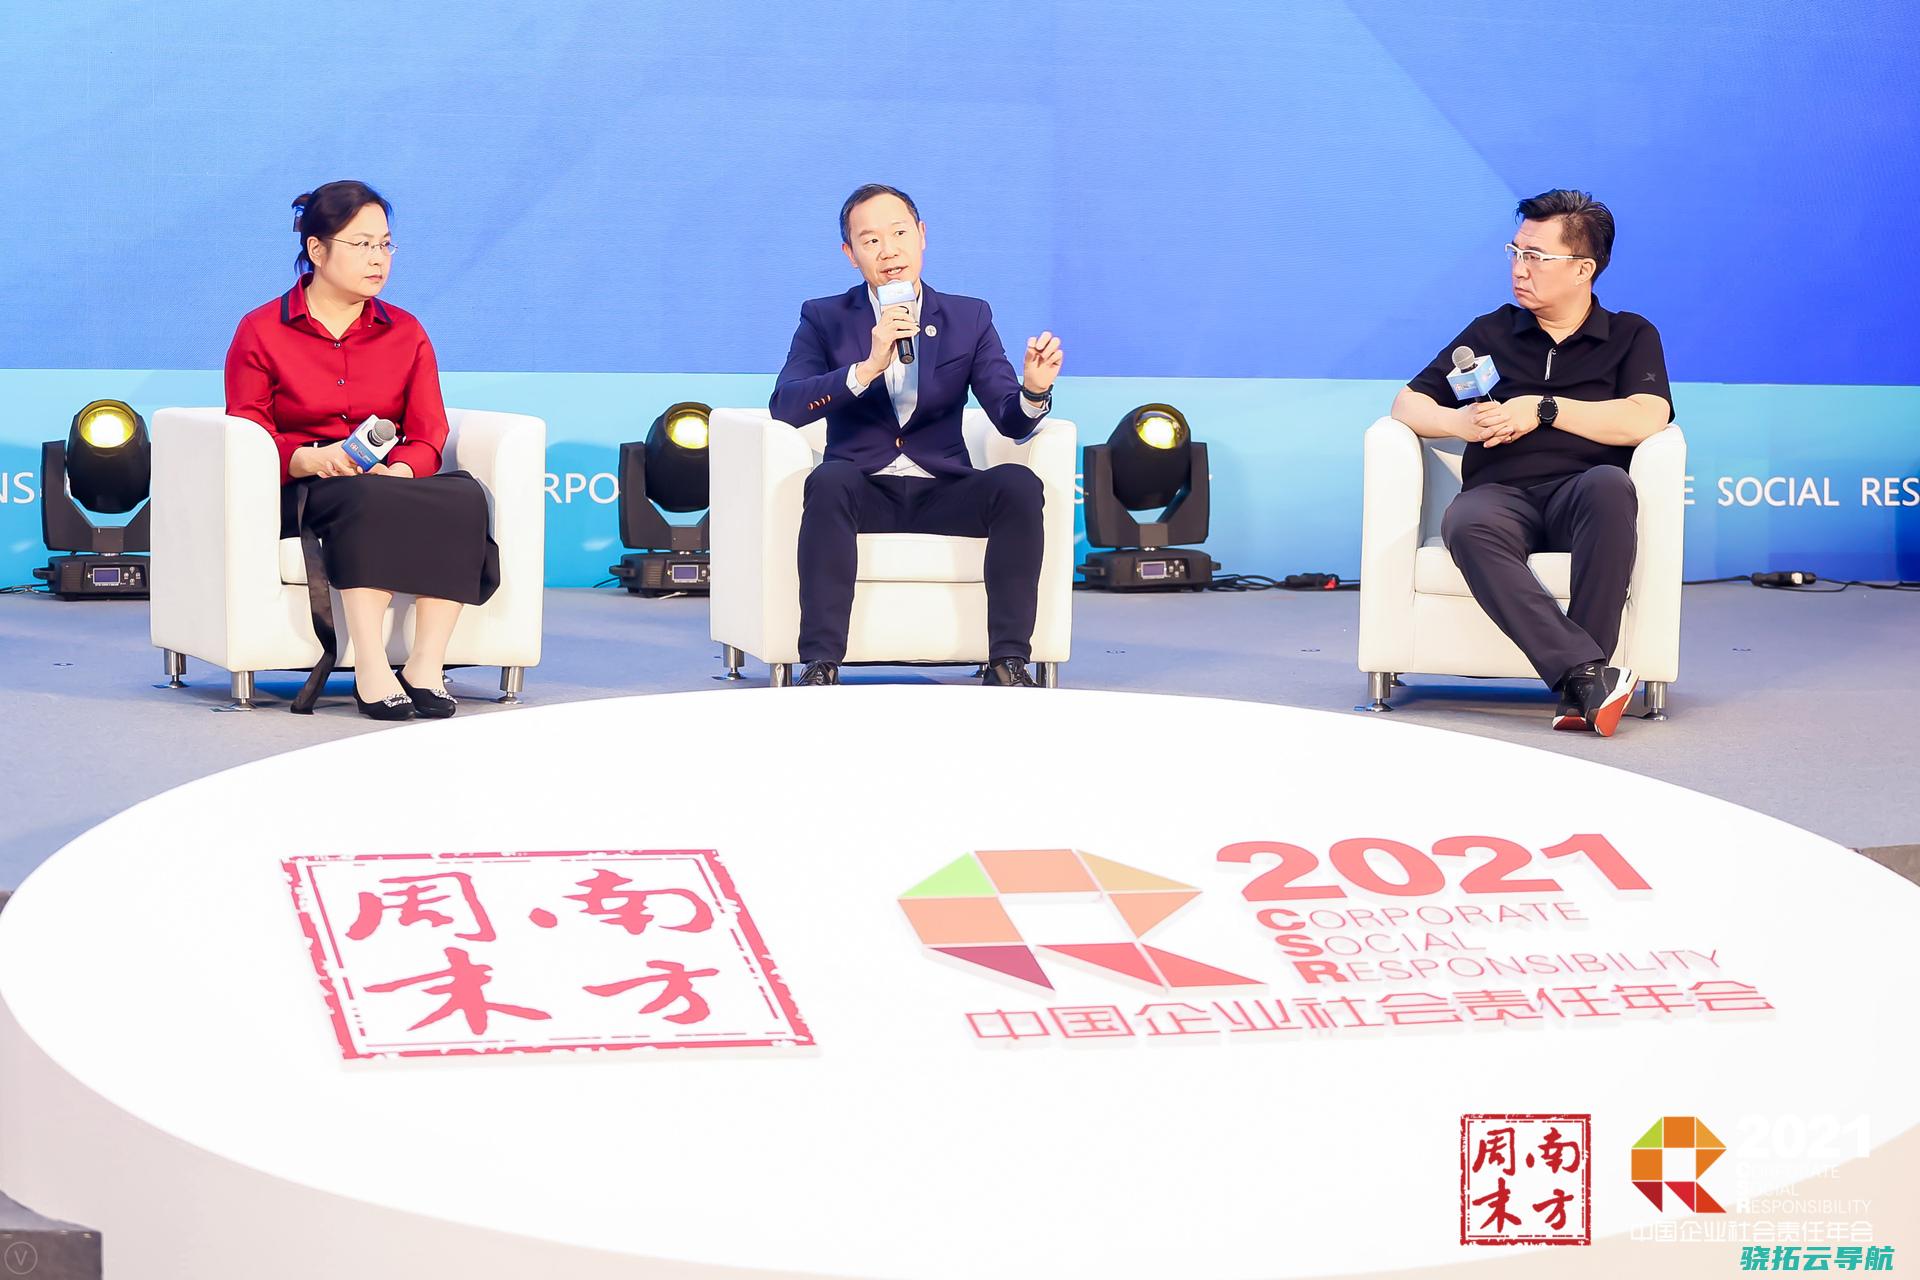 双碳指标2021中国企业社会责任年会提供答案下企